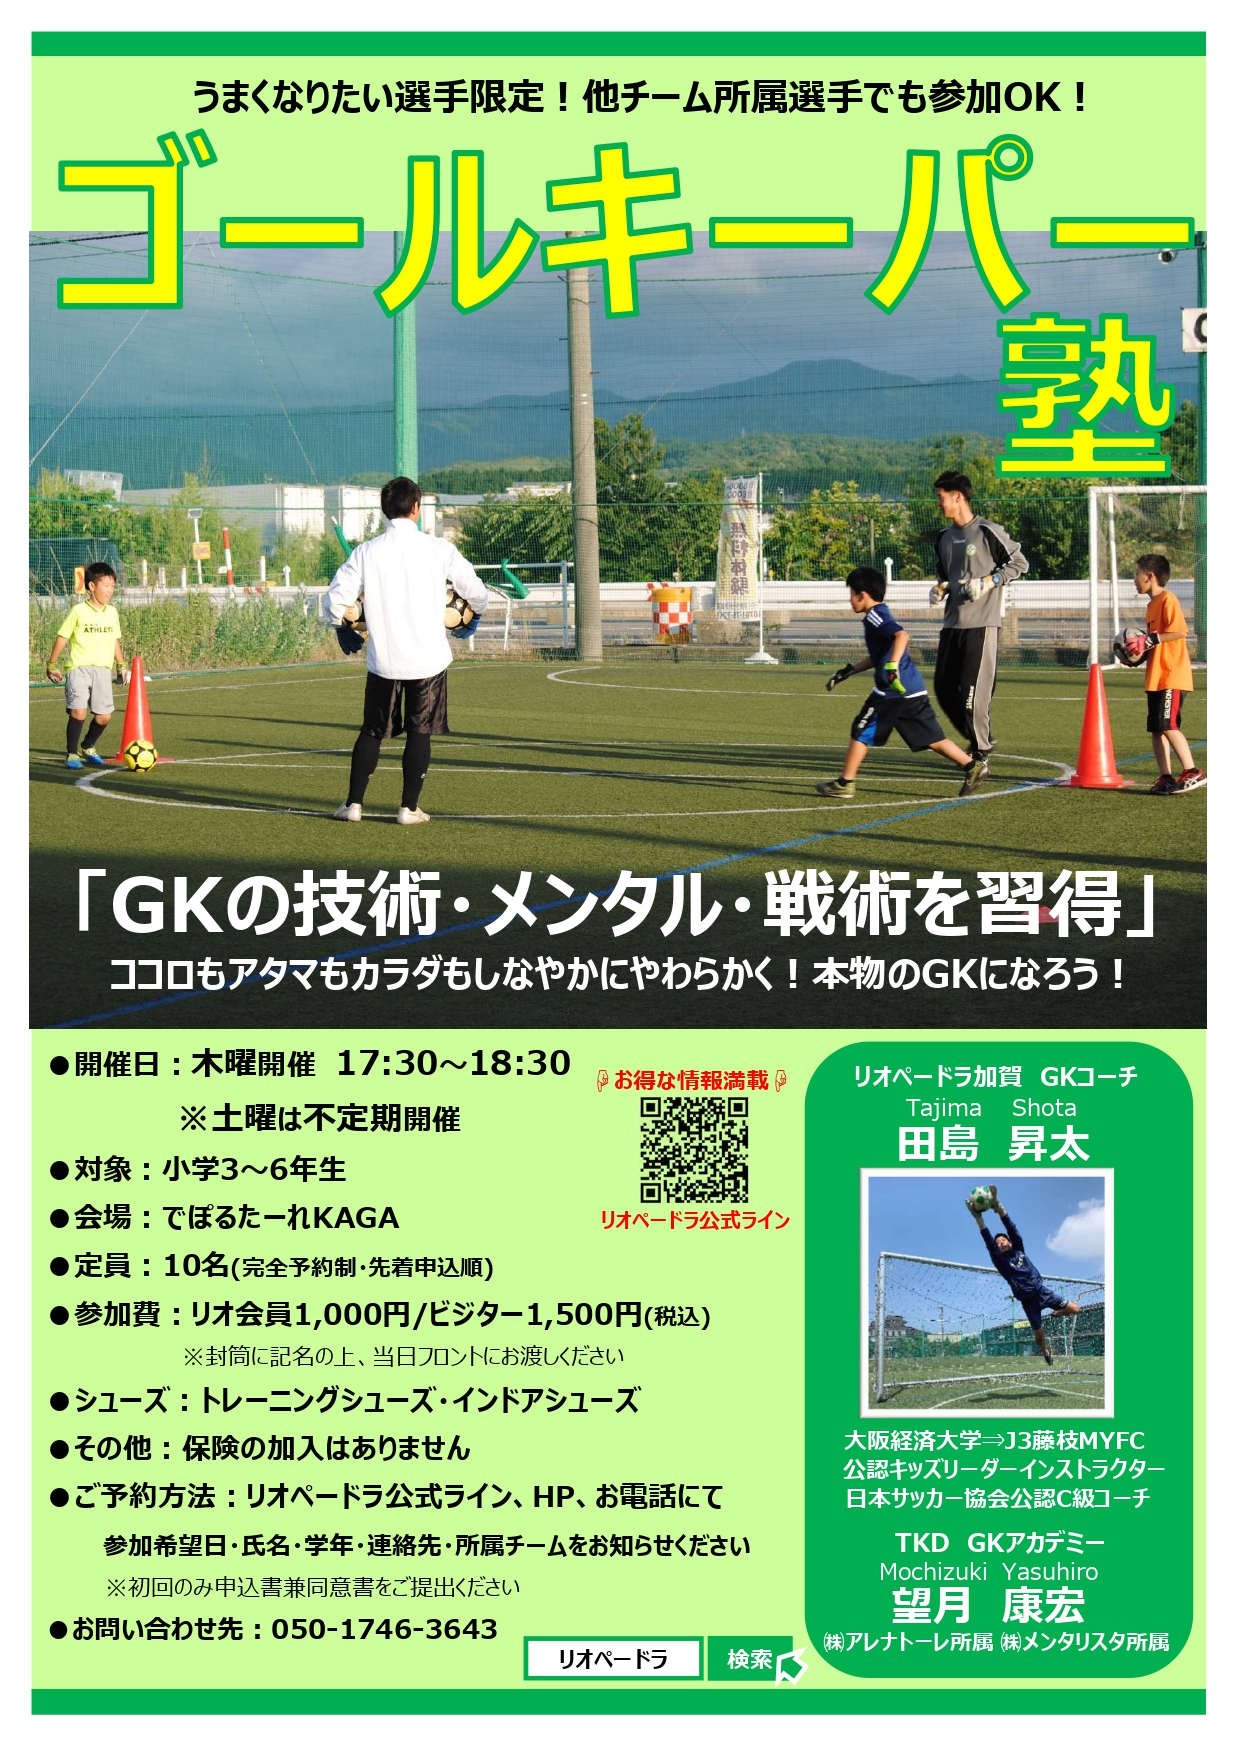 石川県のサッカー 体育 体操 ならスポーツクラブリオペードラ加賀